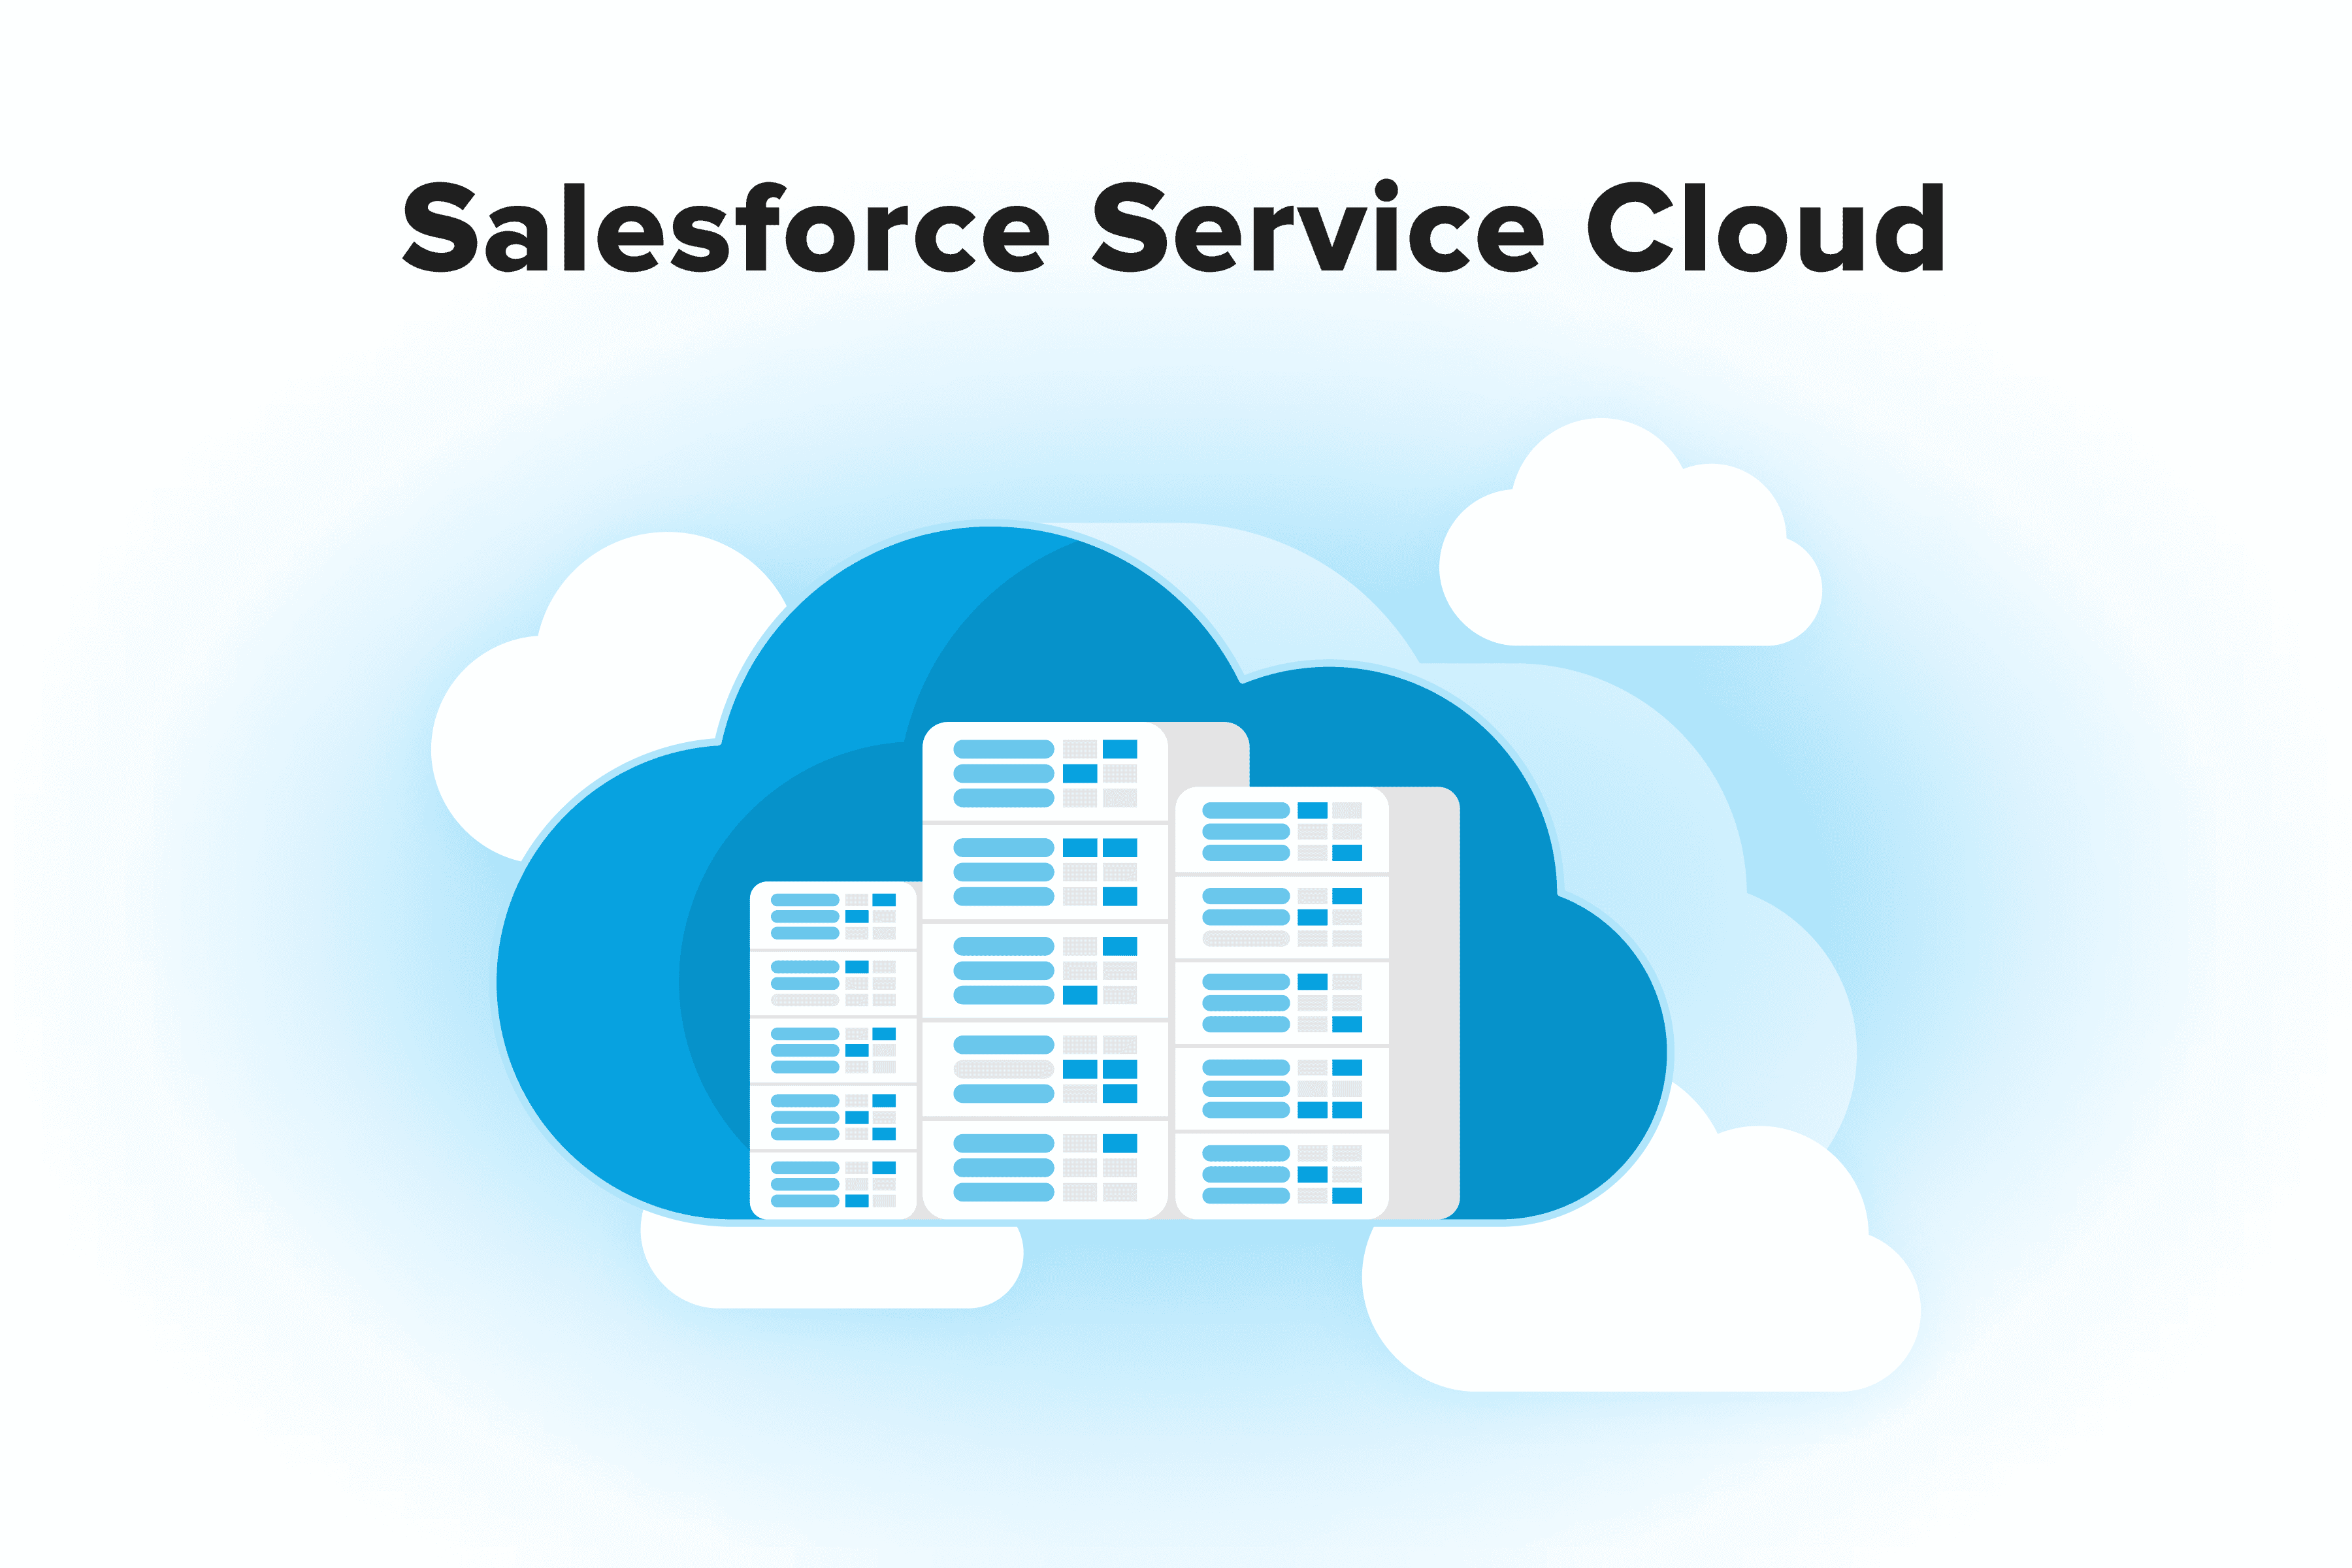 Salesforce Service Cloud Use Cases